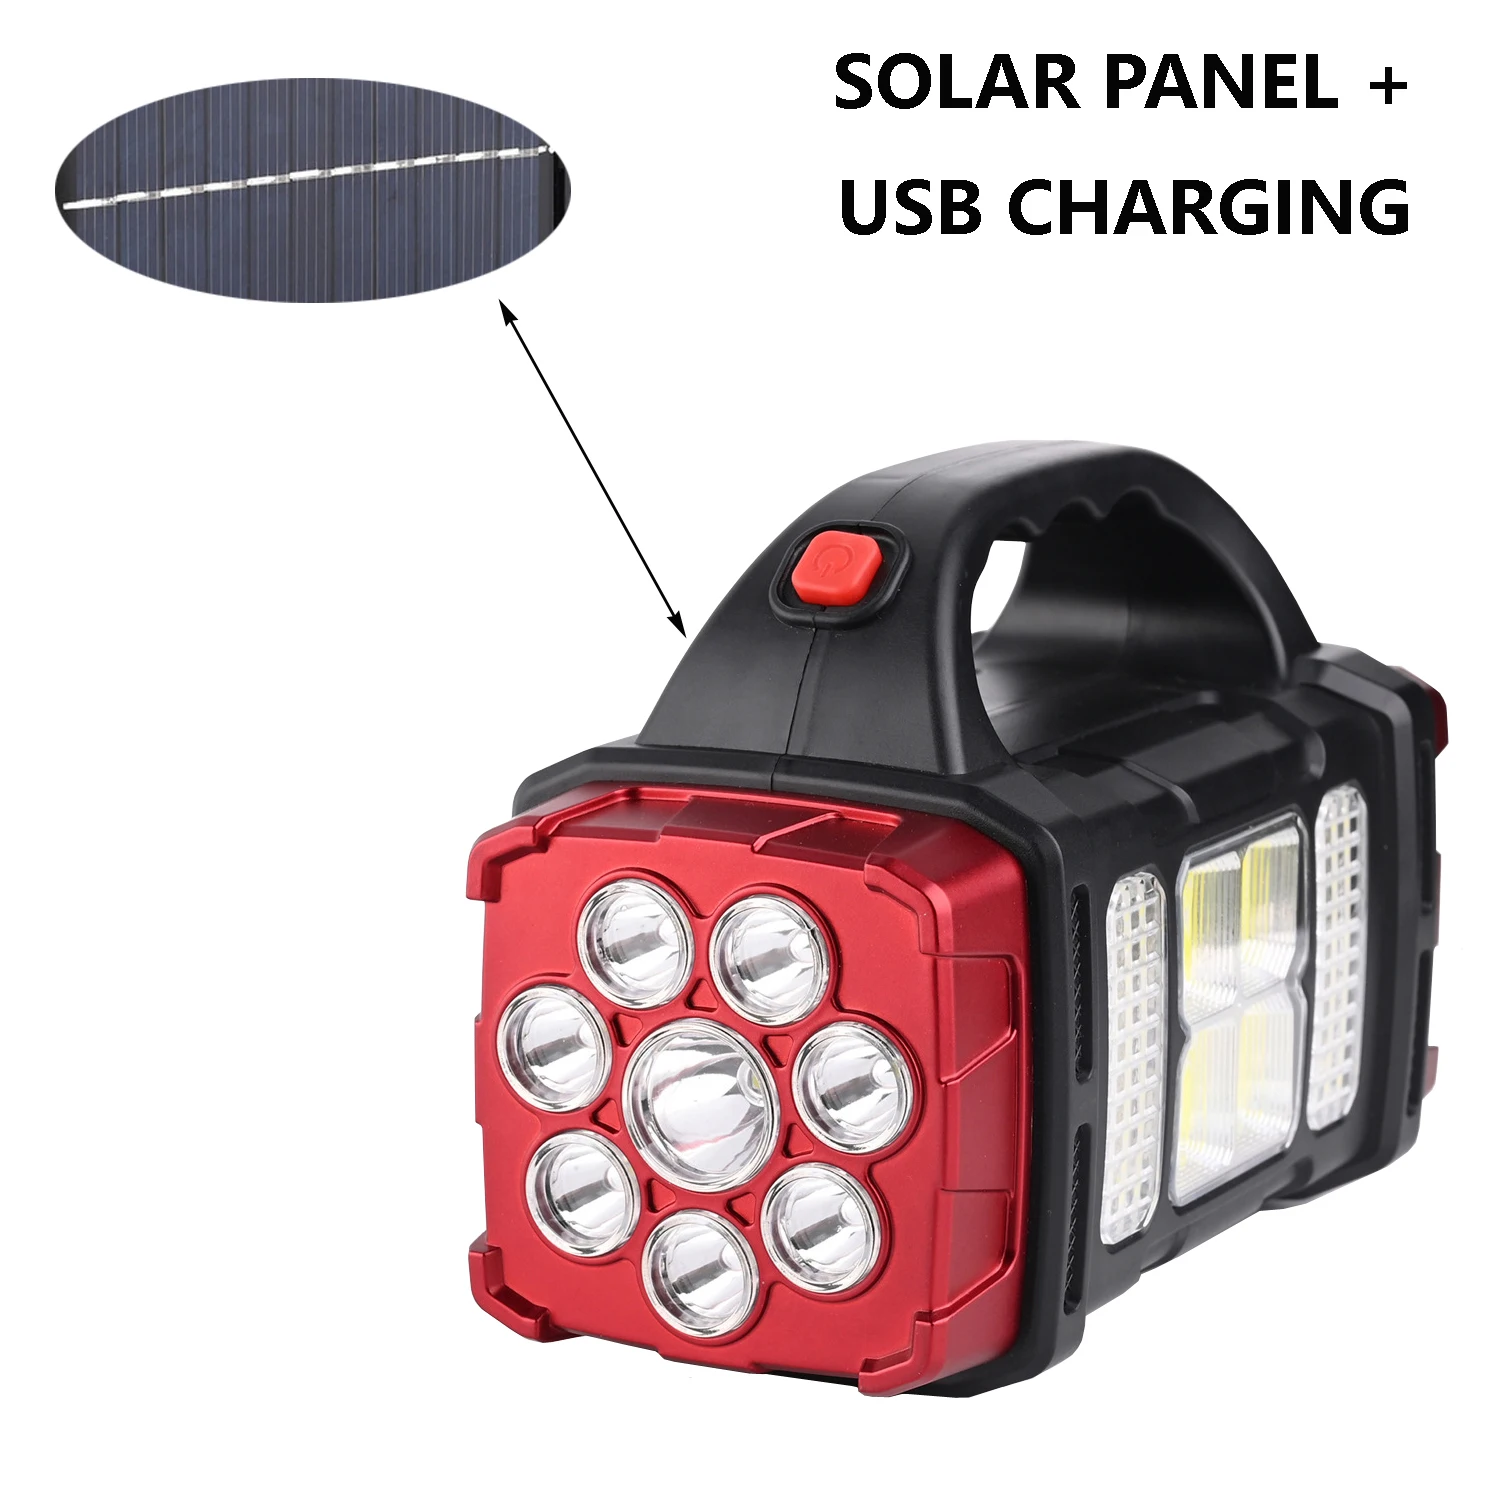 Tanie Panel słoneczny przenośny reflektor ładowalna latarka USB COB Floodlight Outdoor Camping Fishing sklep